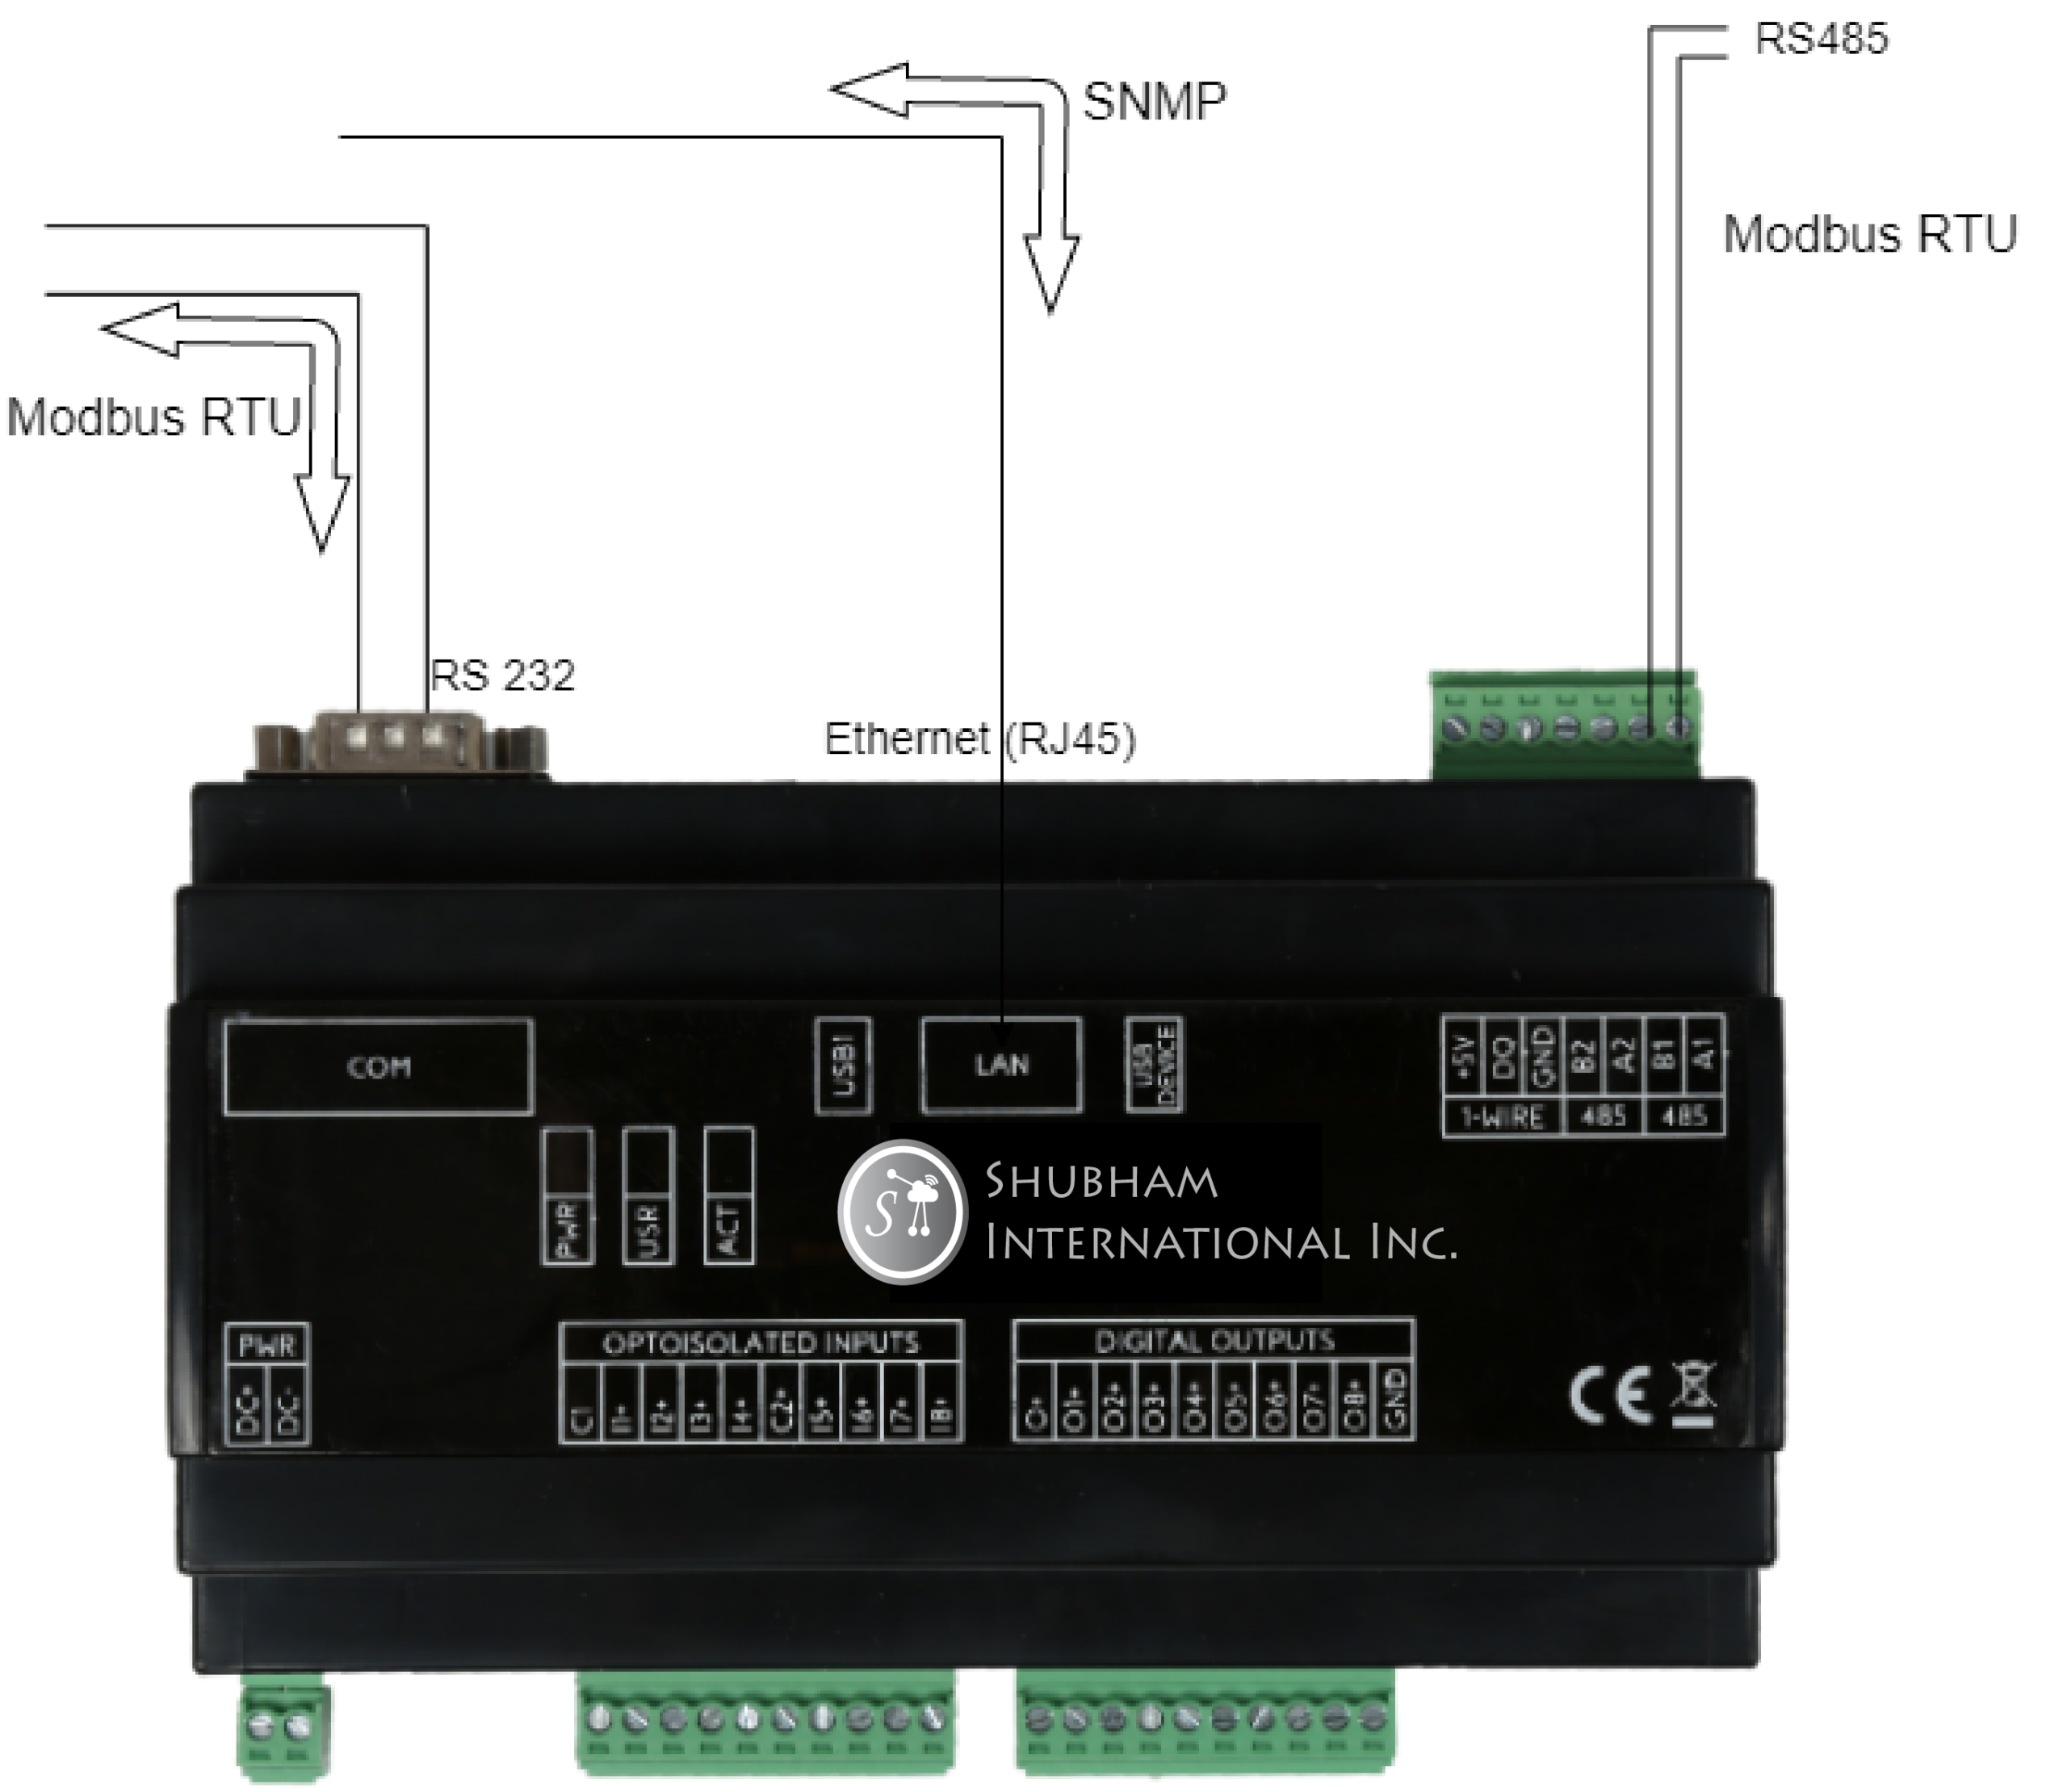 Modbus RTU - SNMP Gateway Converter